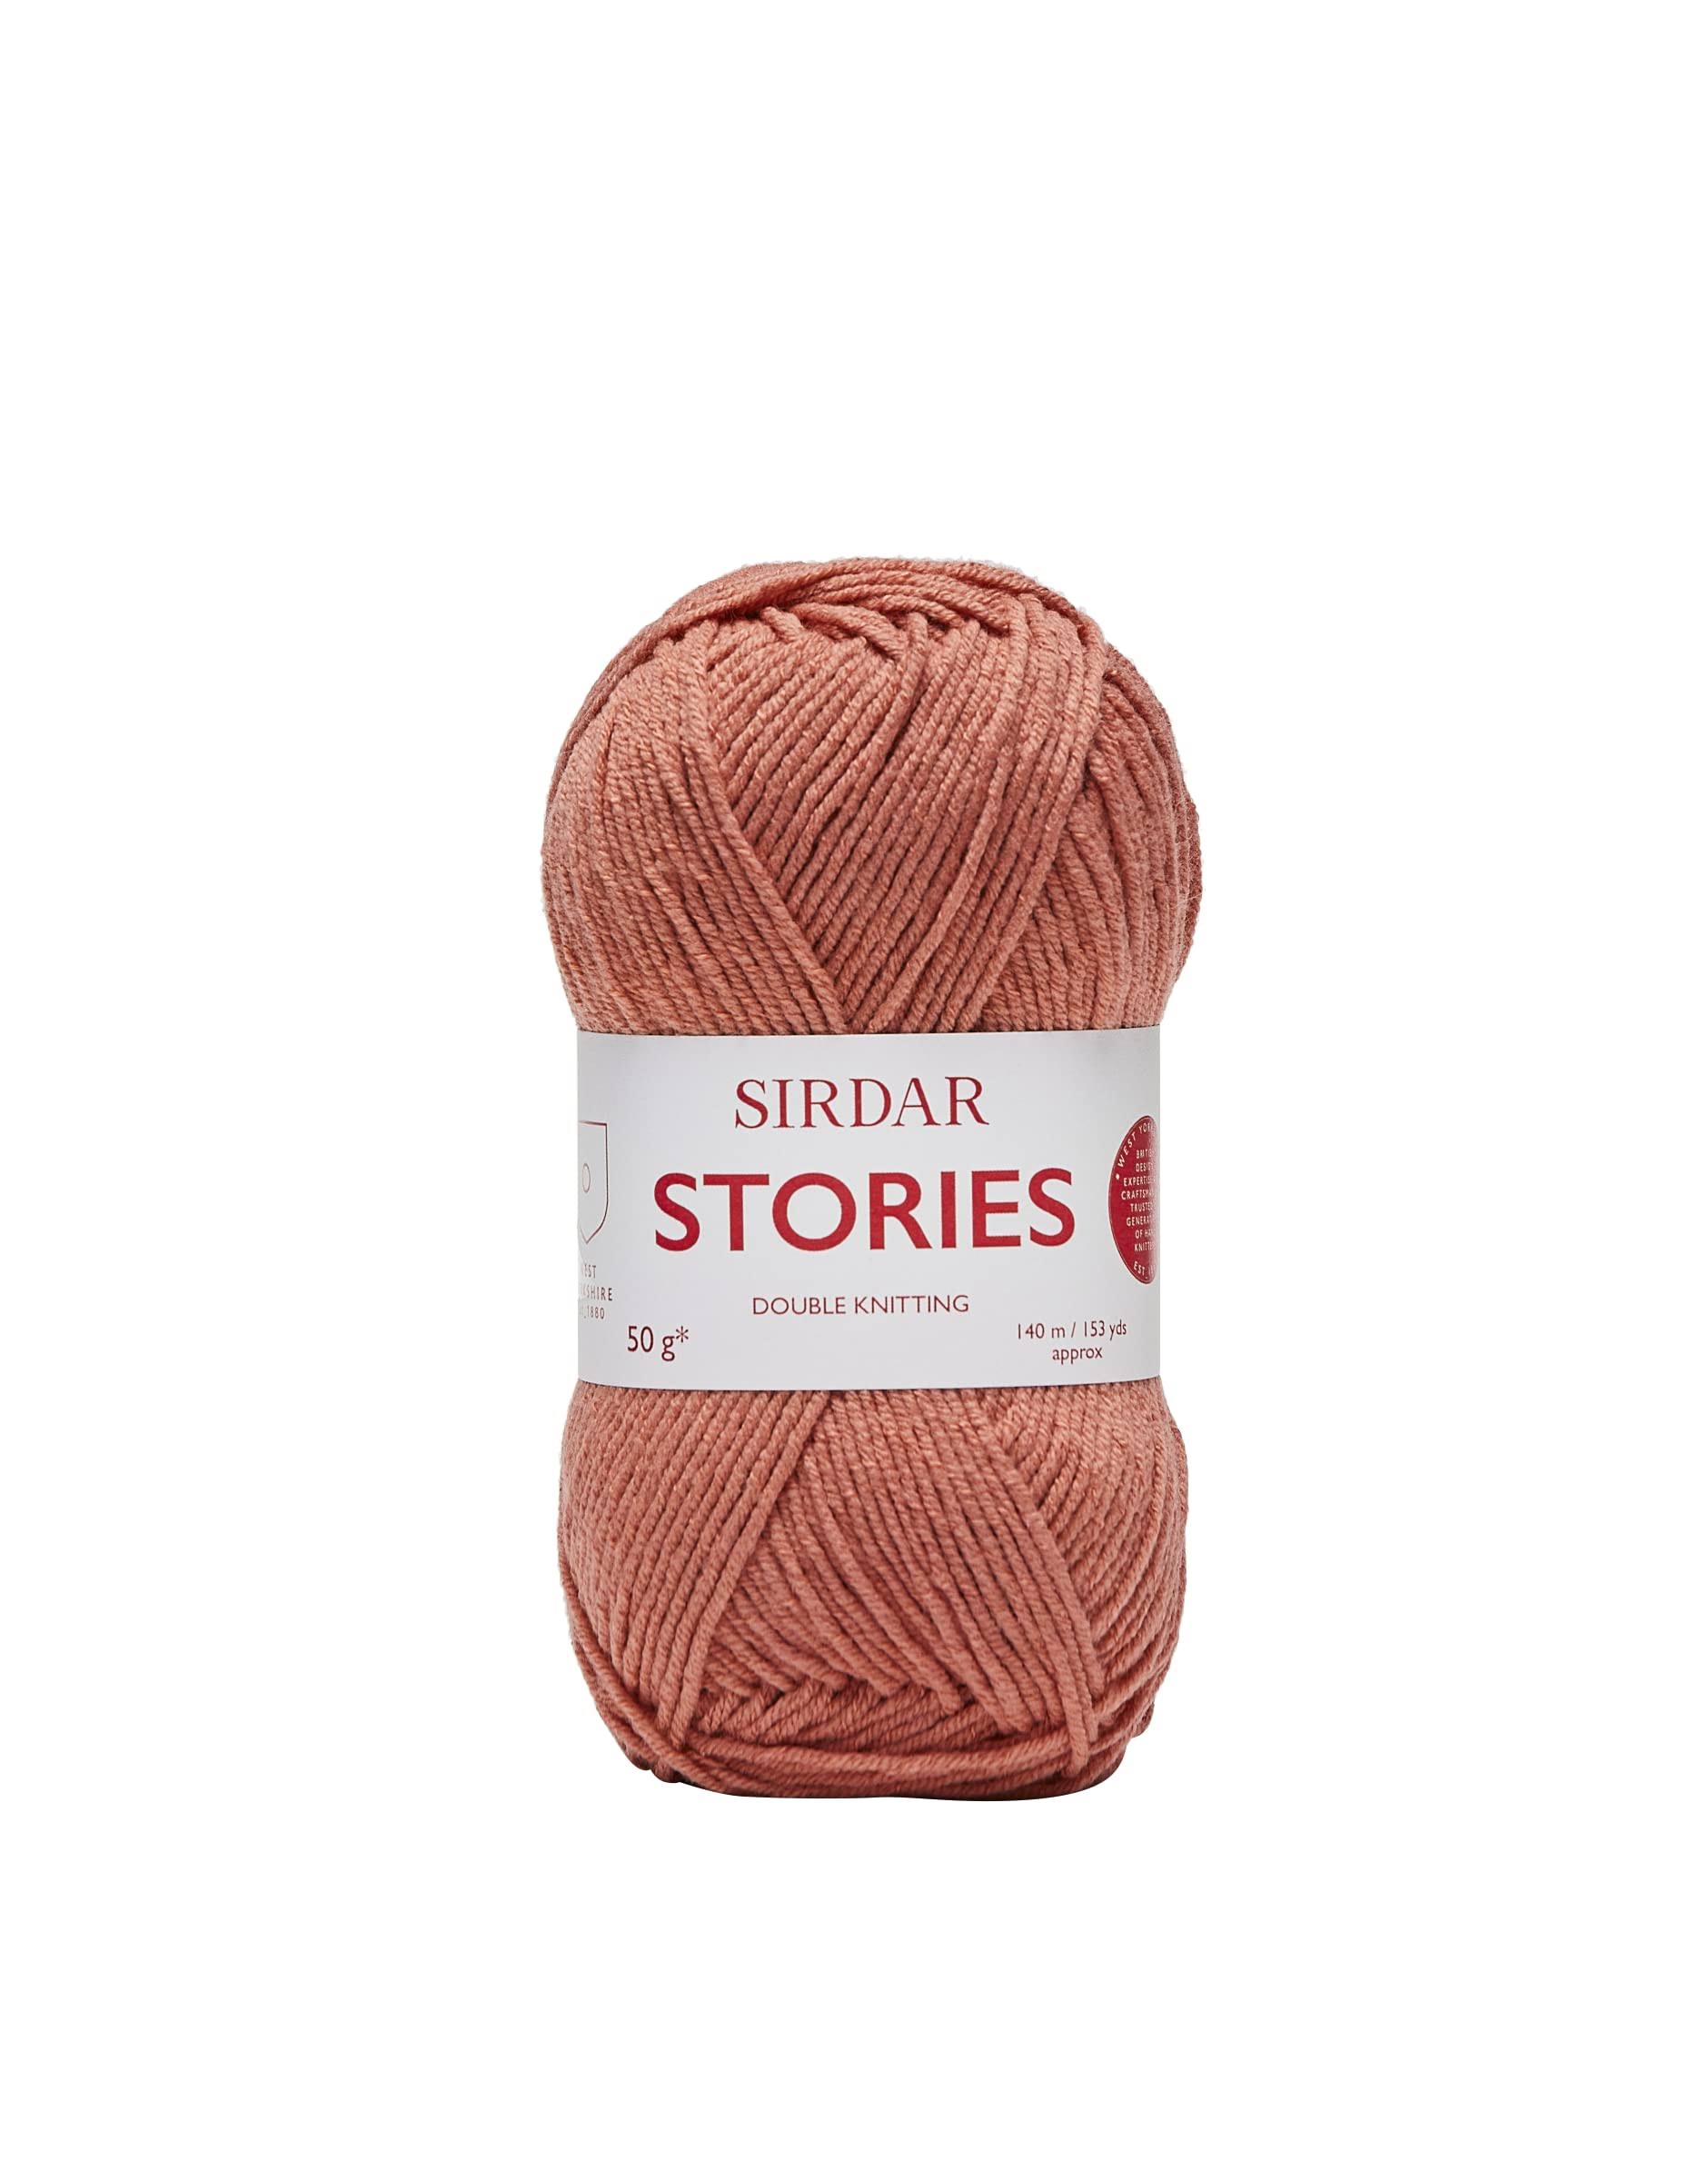 Sirdar Stories Dk 830 After Glow